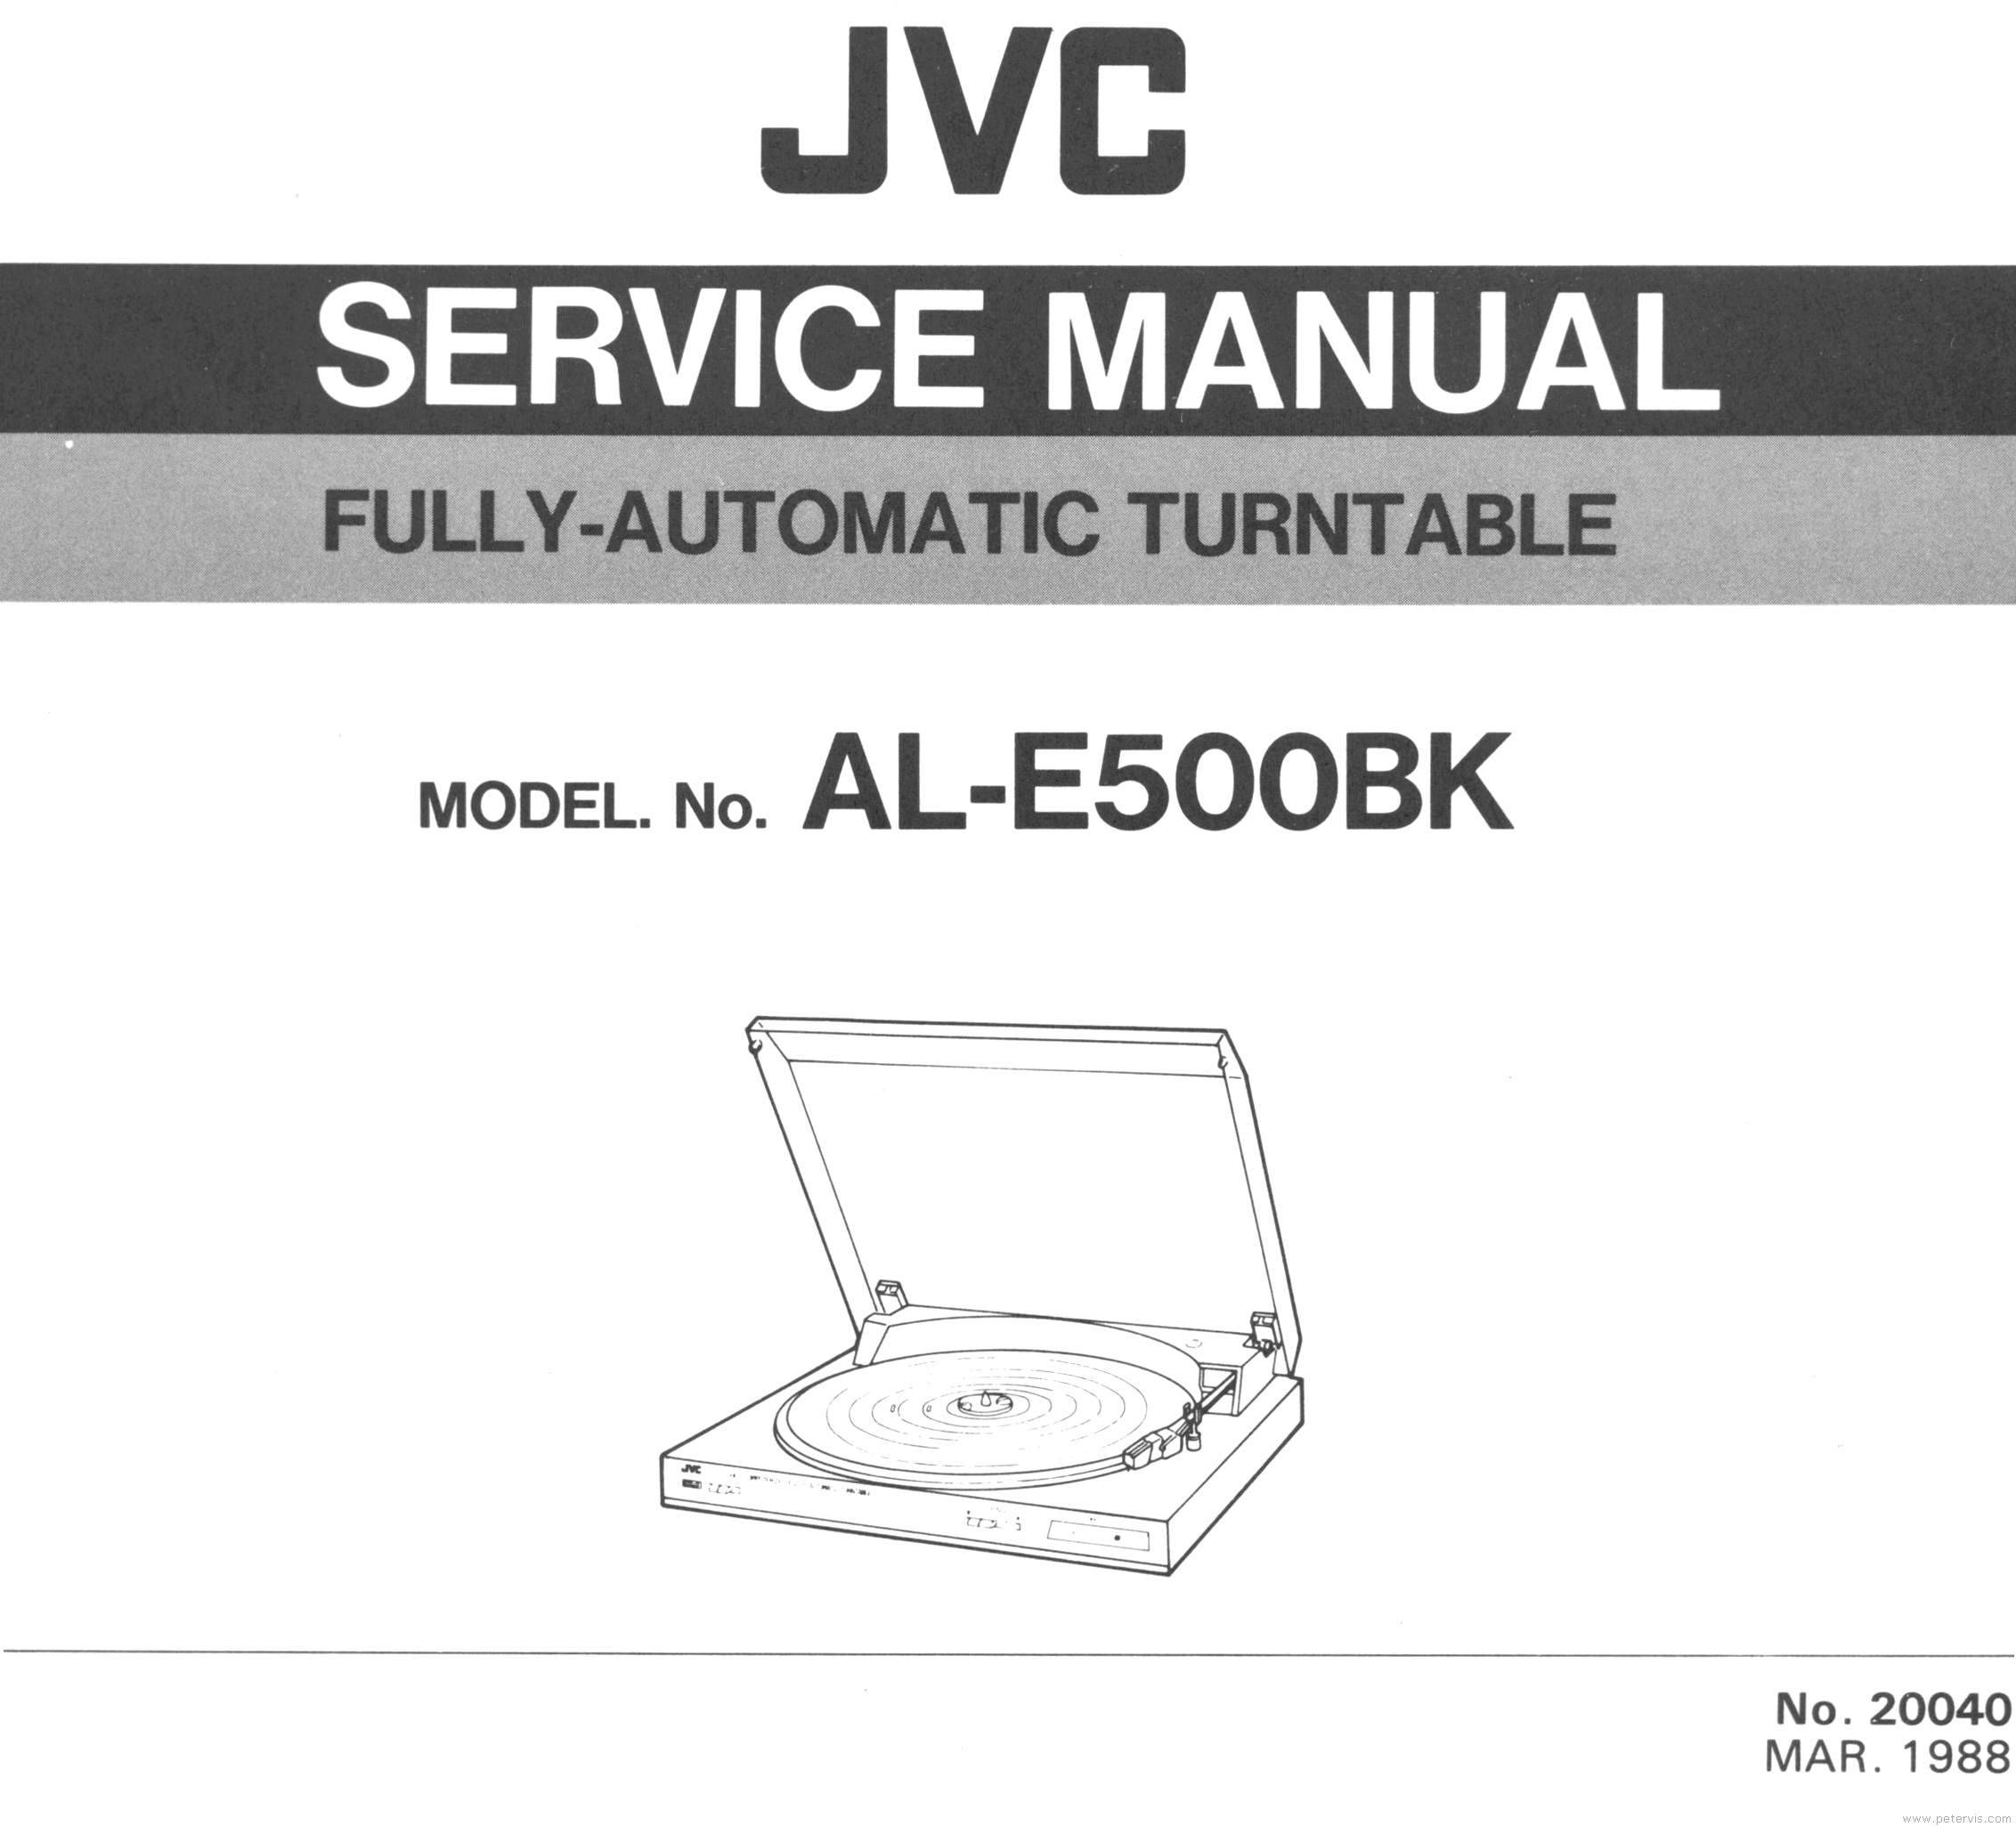 JVC AL-E500